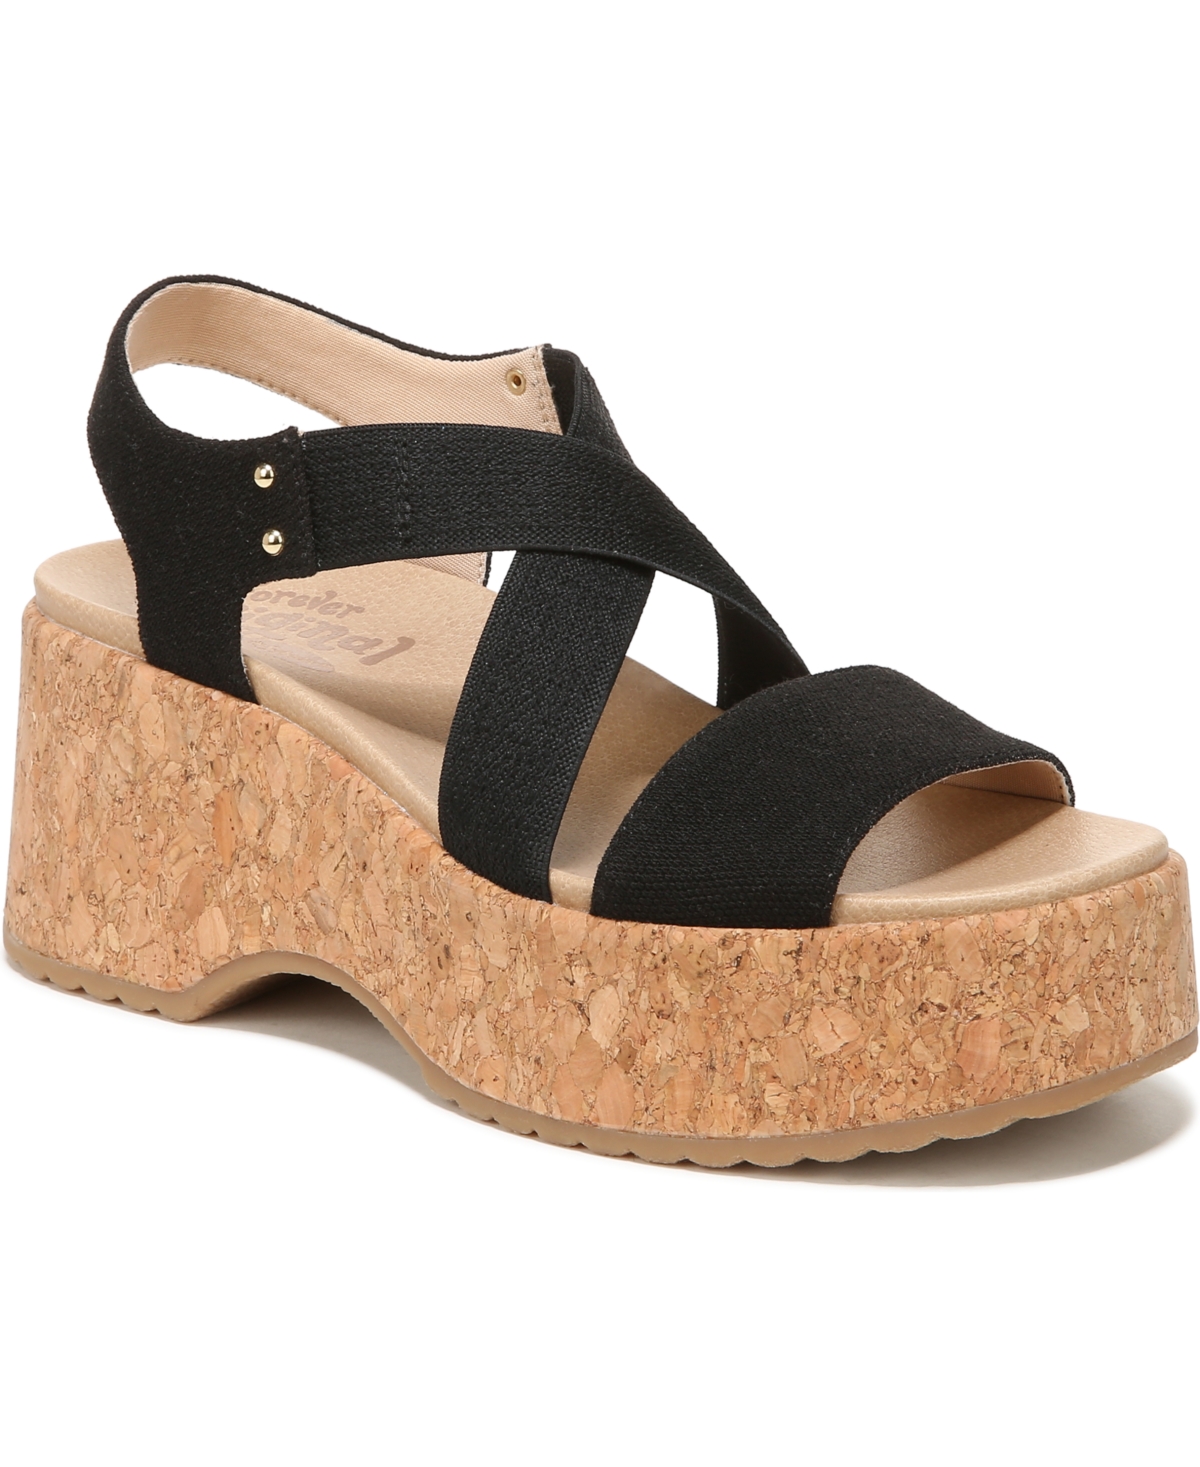 UPC 017117744567 product image for Dr. Scholl's Women's Dottie Platform Sandals Women's Shoes | upcitemdb.com